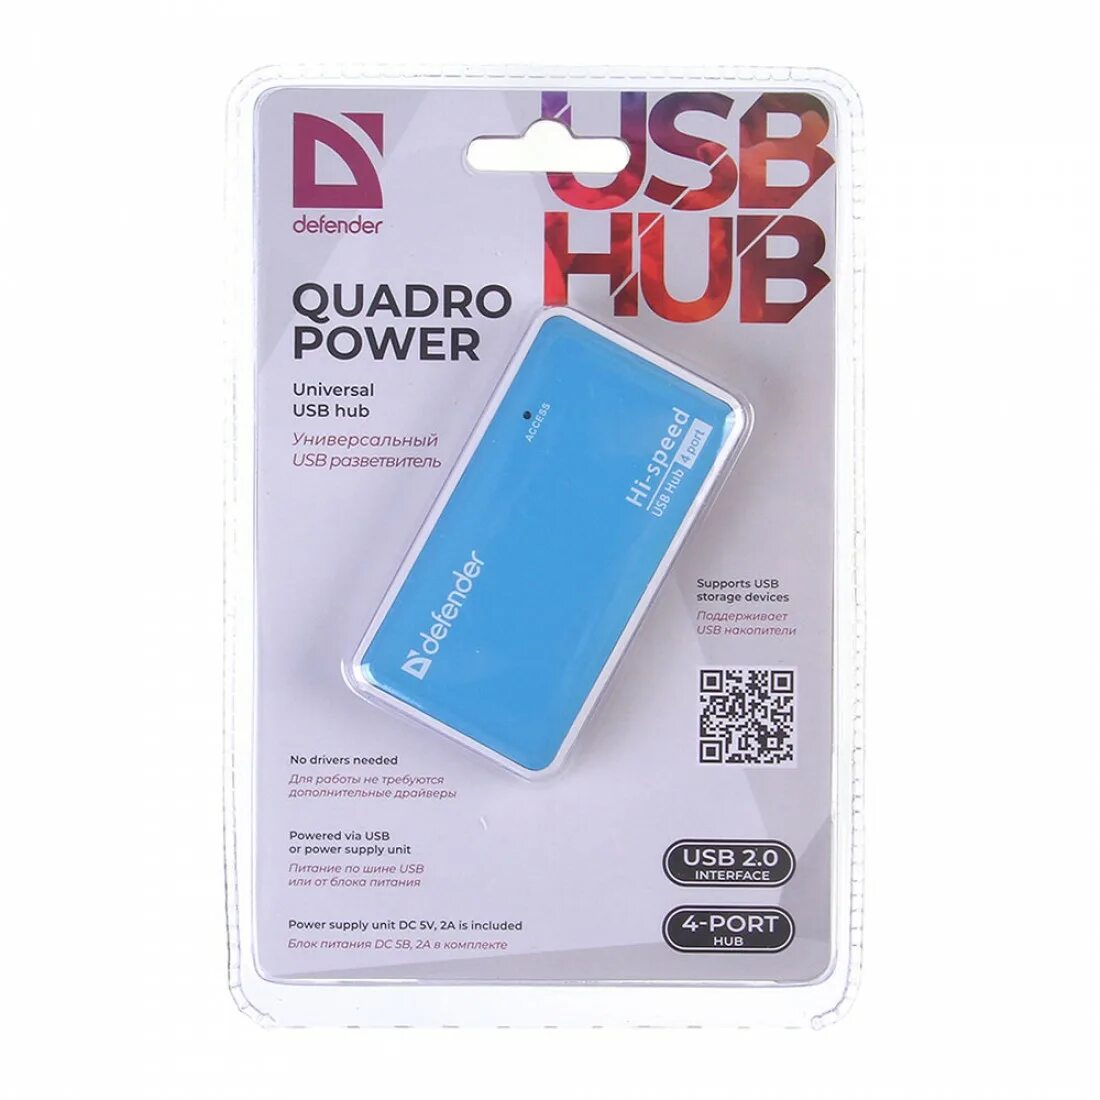 Defender quadro. Универсальный хаб USB разветвитель Defender Quadro Power, 4 порта. Hub Defender Quadro Power USB2.0, 4 порта (1/100). Port Hub USB Defender Quadro Power+б/п. USB-хаб Defender Quadro PROMT, USB 2.0, 4 порта.